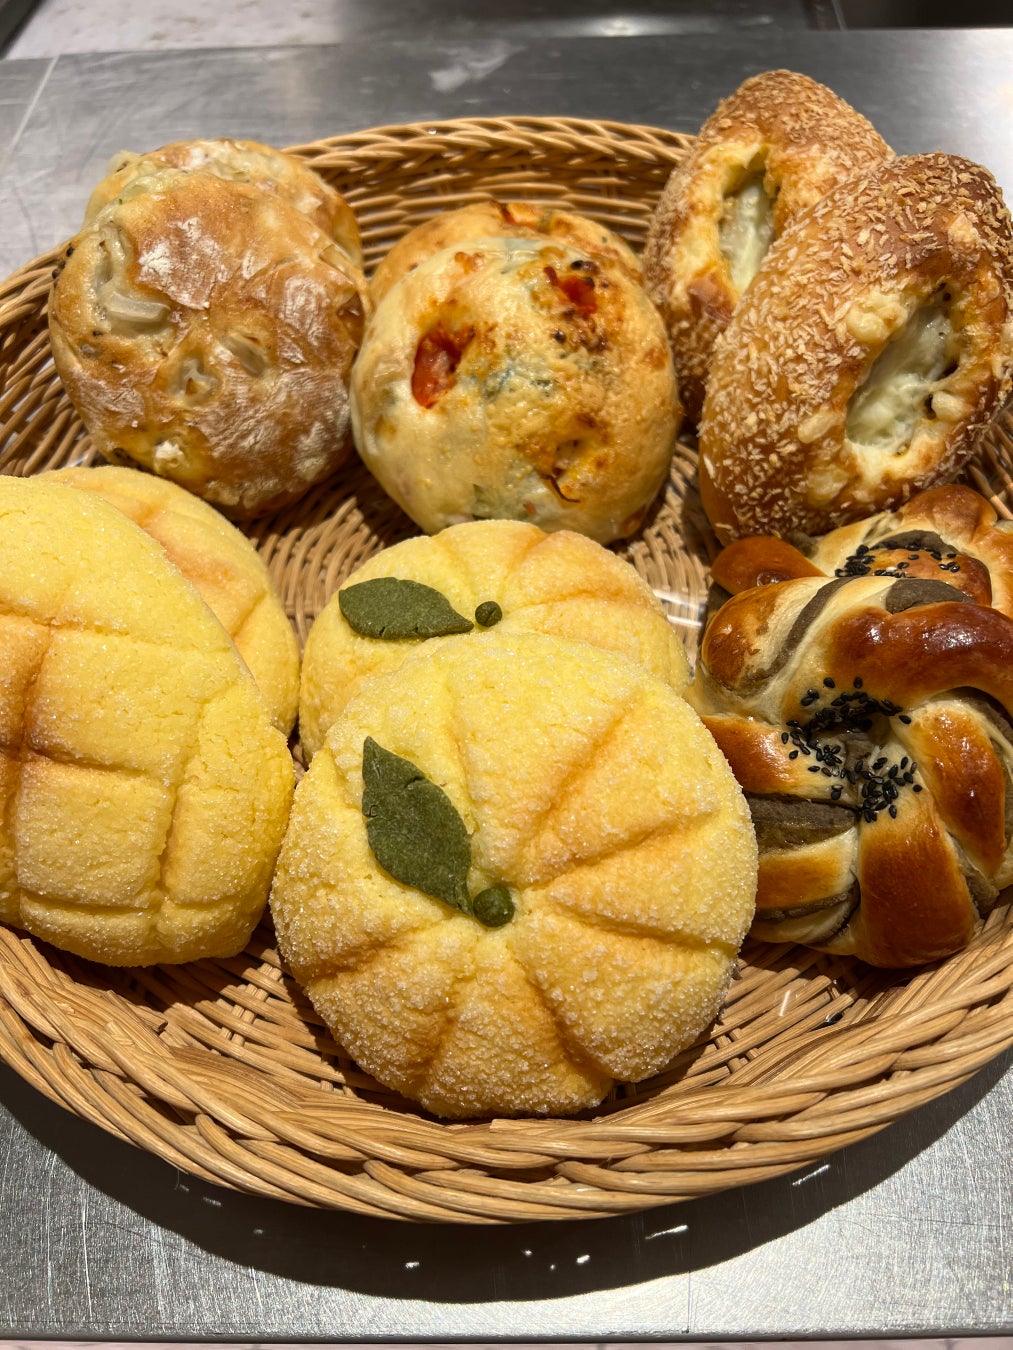 ５月25日（土）と26日（日）は大阪産(もん)の日。大阪産(もん)マルシェ Road to EXPO 2025で大阪産(もん)のパン・焼き菓子販売とレシピコンテストに村川学園が参加